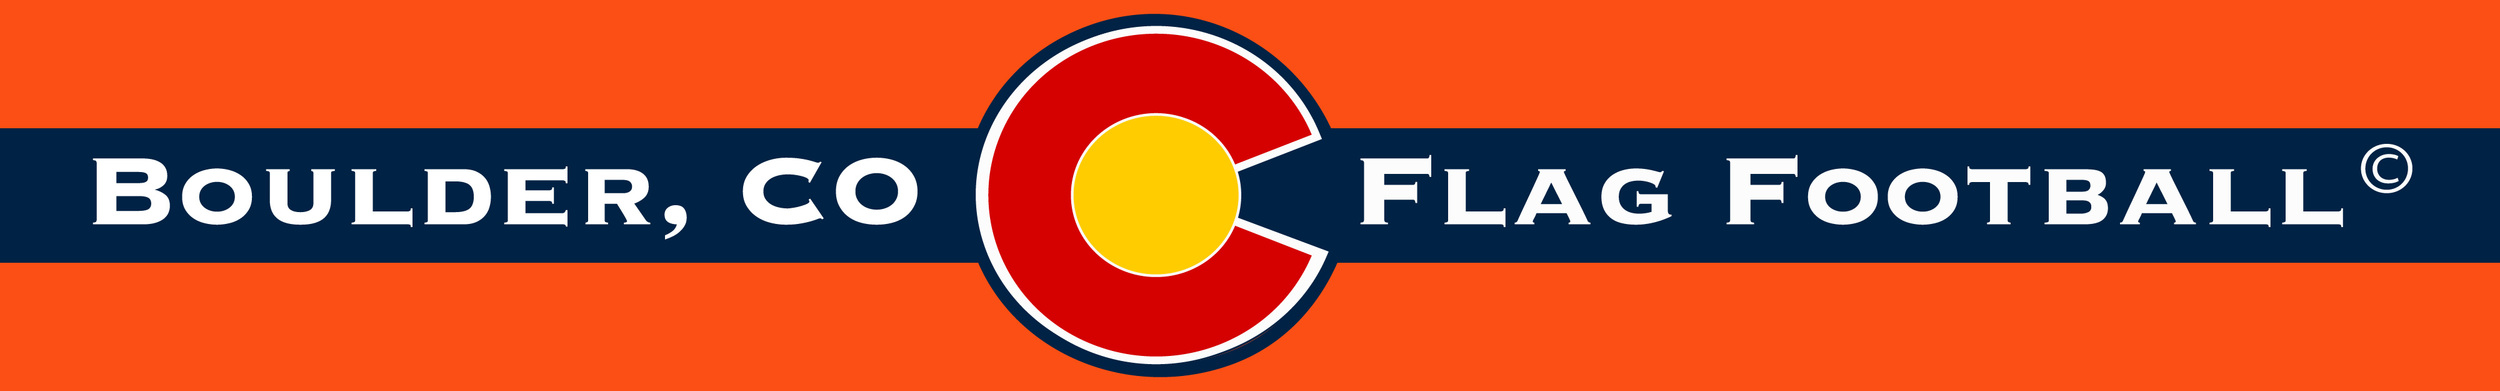 Boulder, CO Flag Football_Banner.jpg